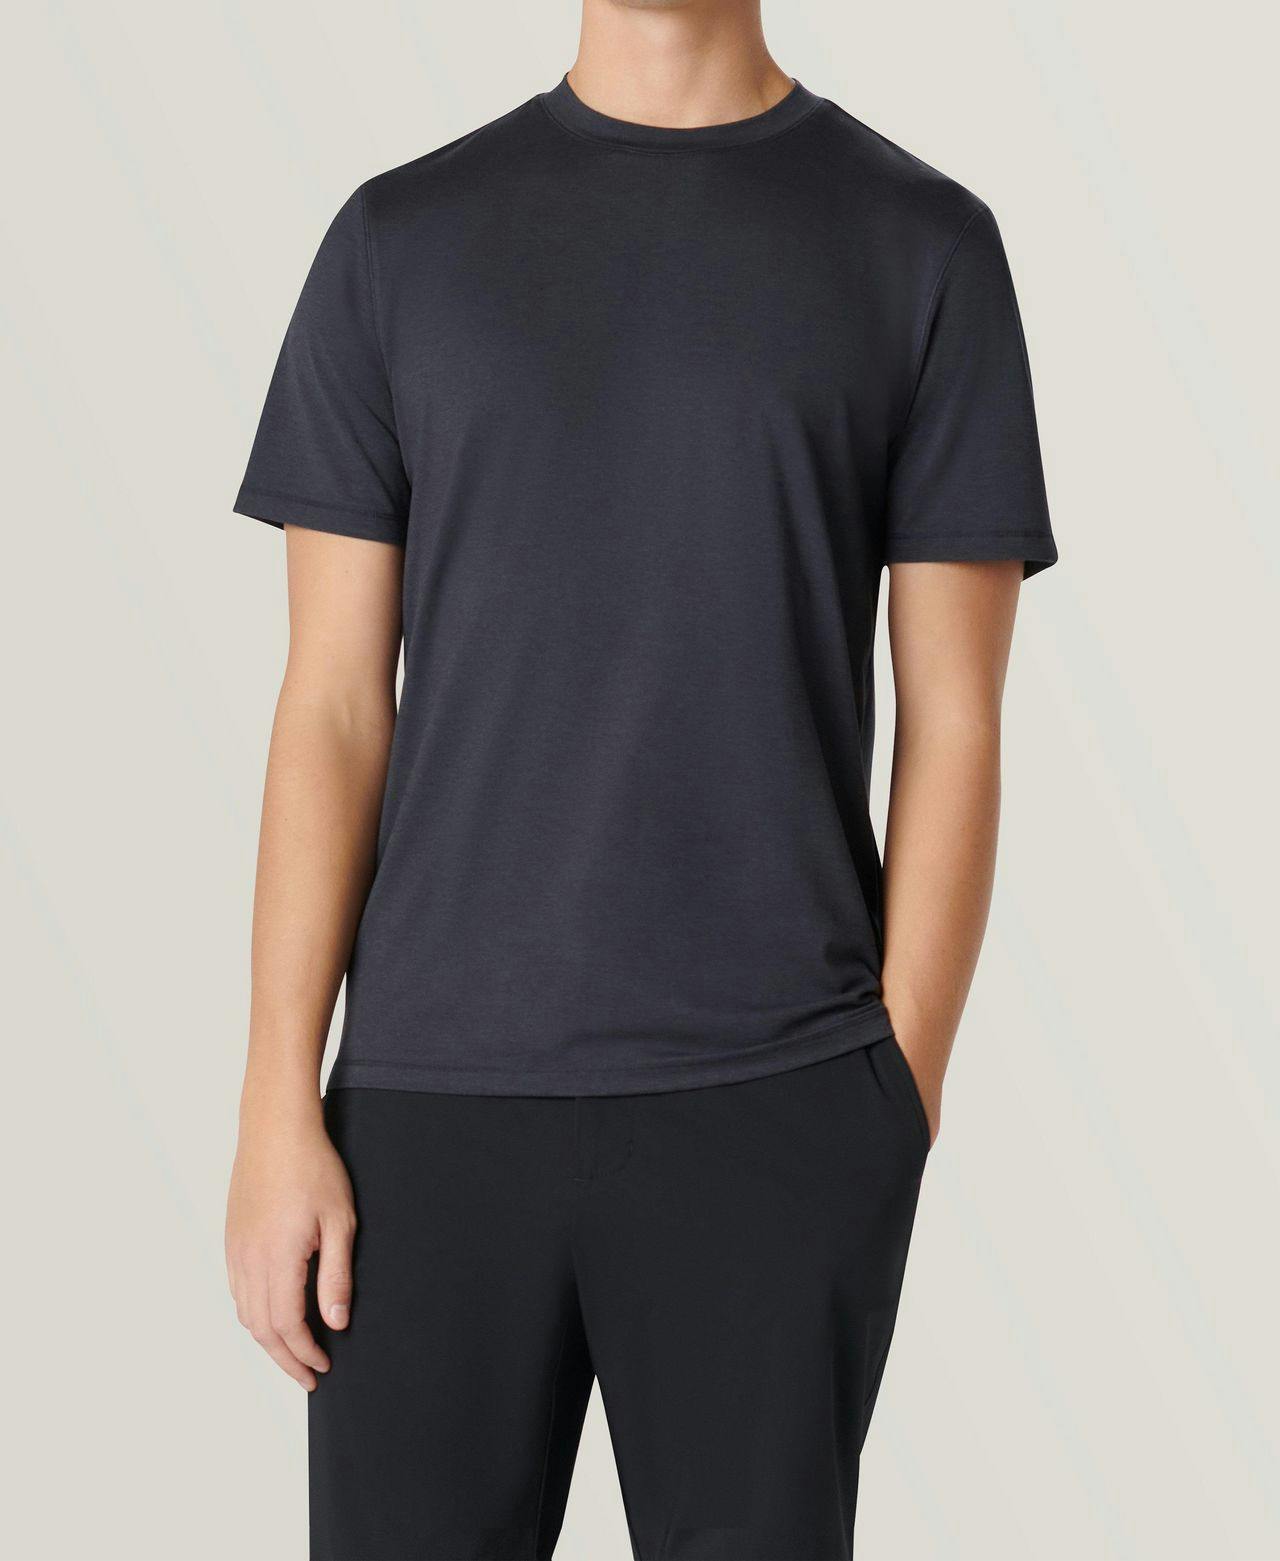 male model wearing Bugatchi UV50 performance t-shirt